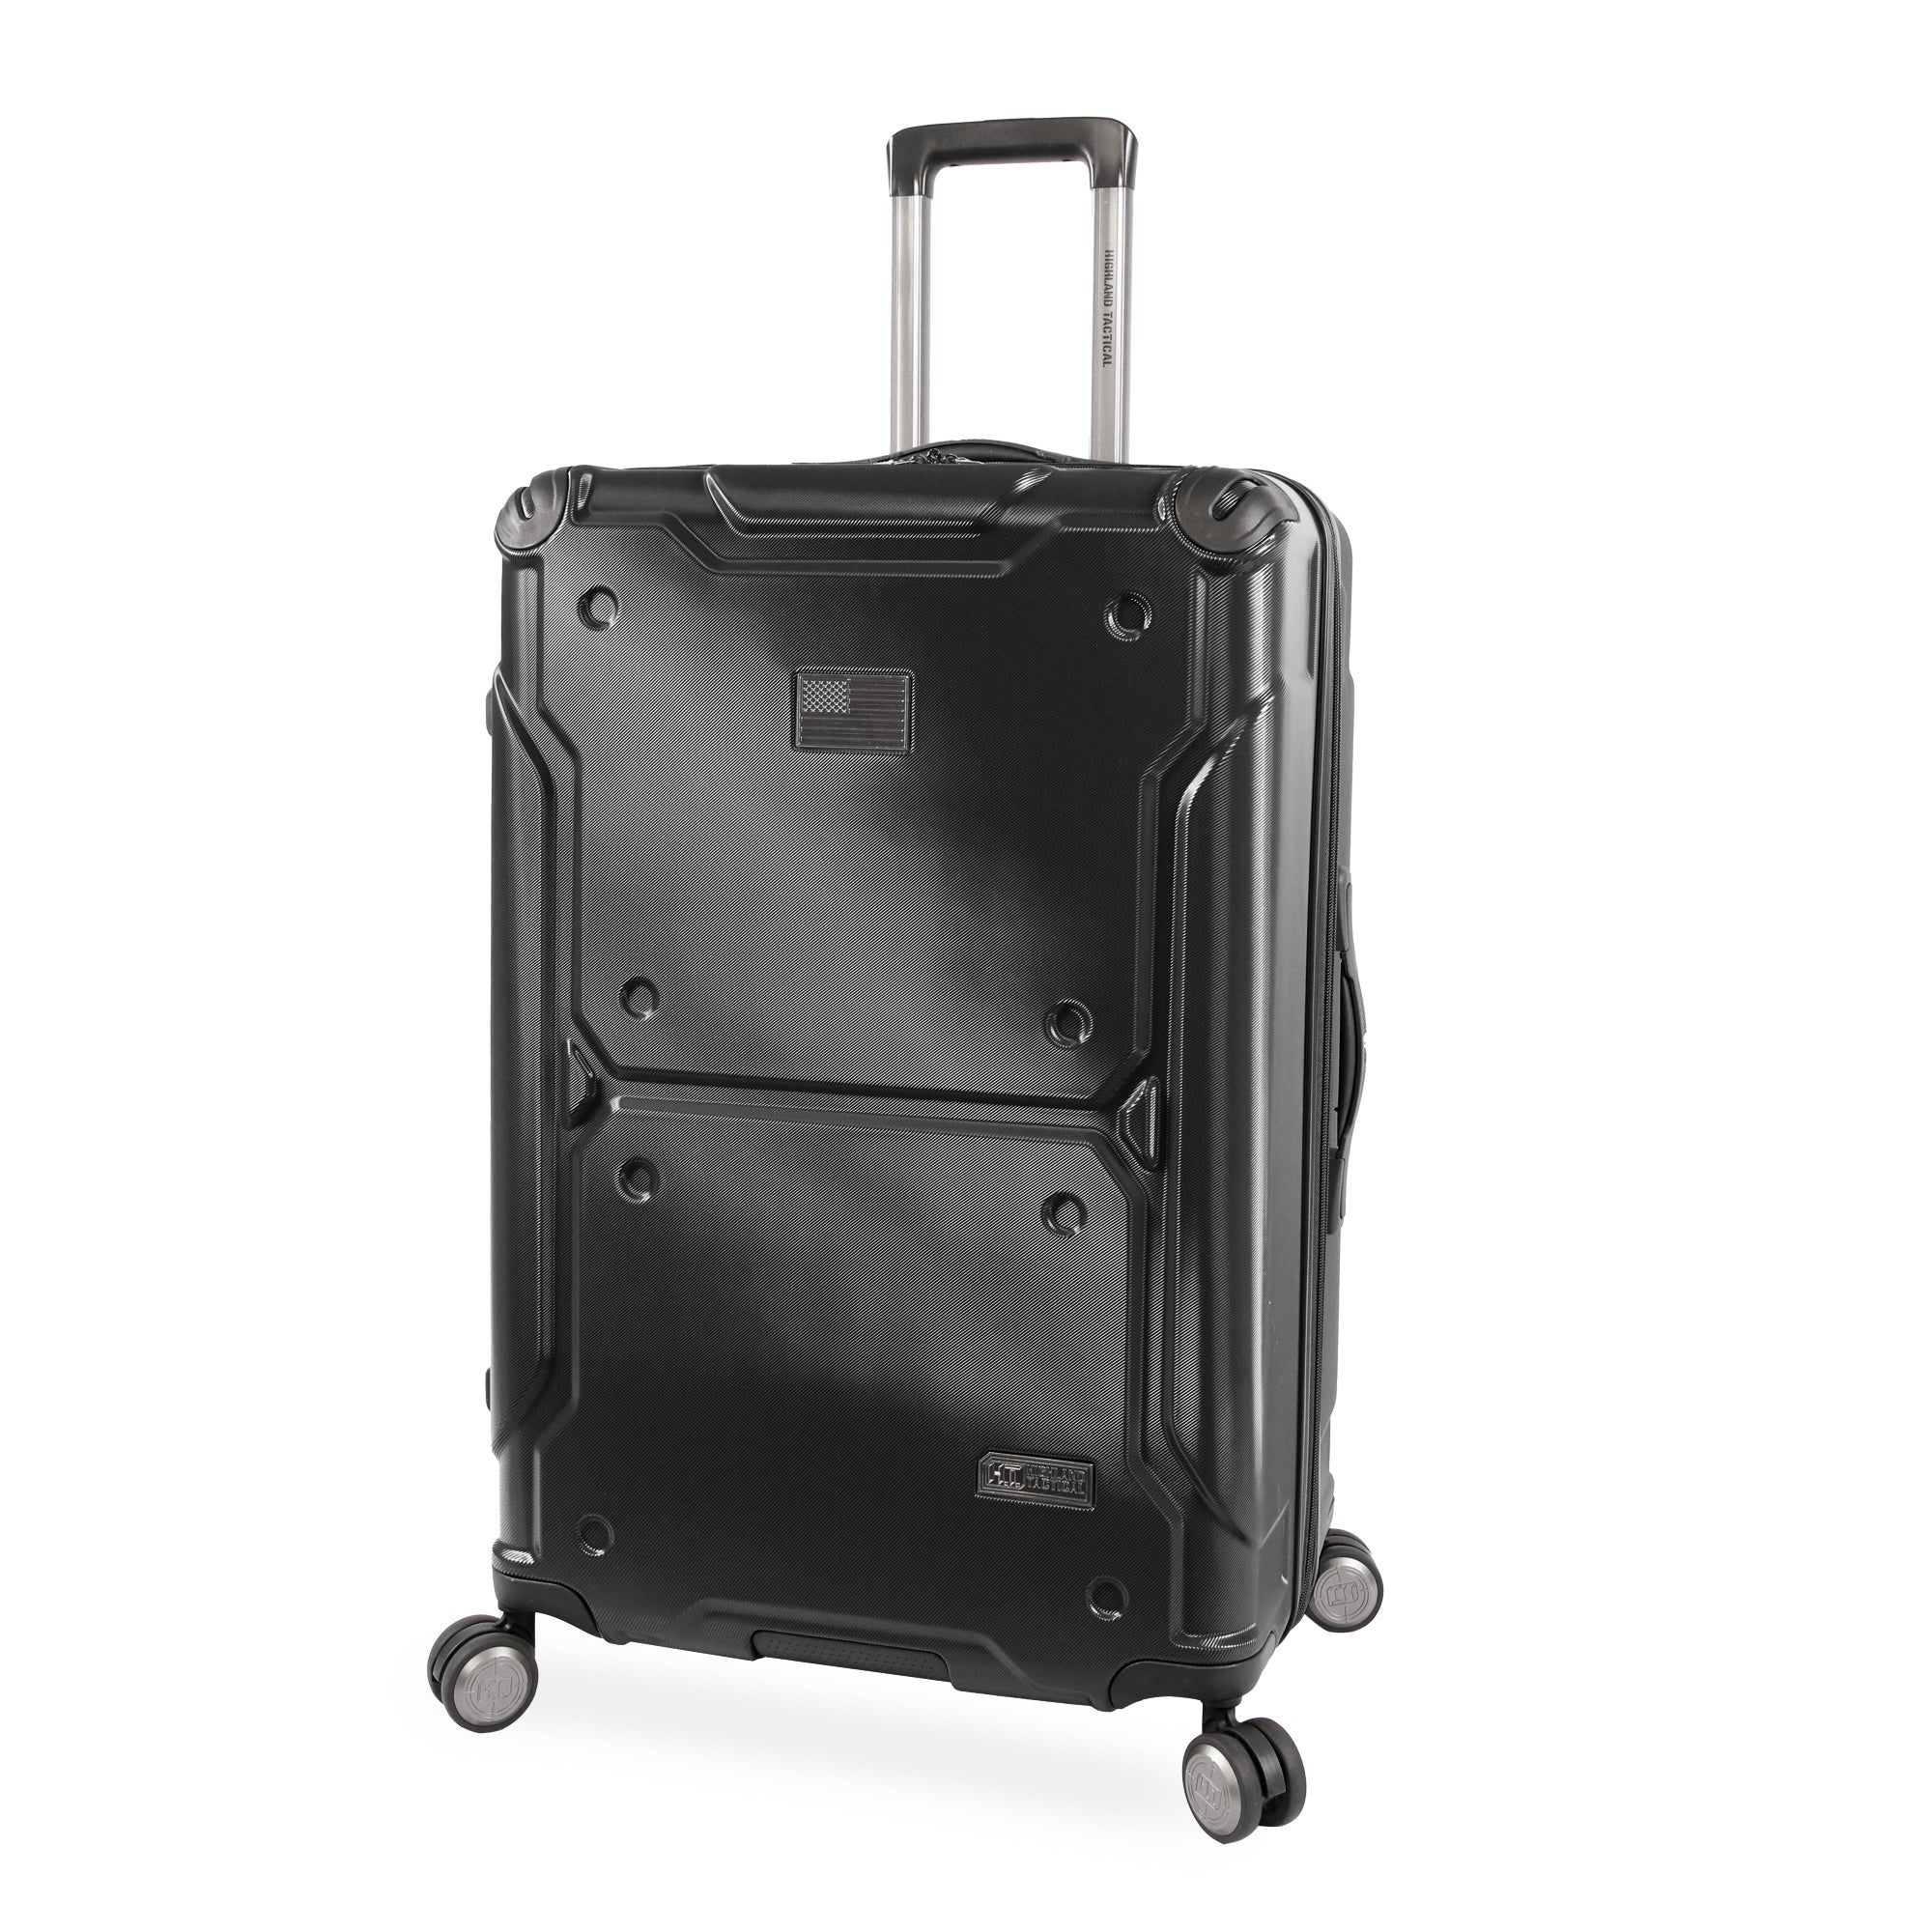 TITAN 29" Large Luggage